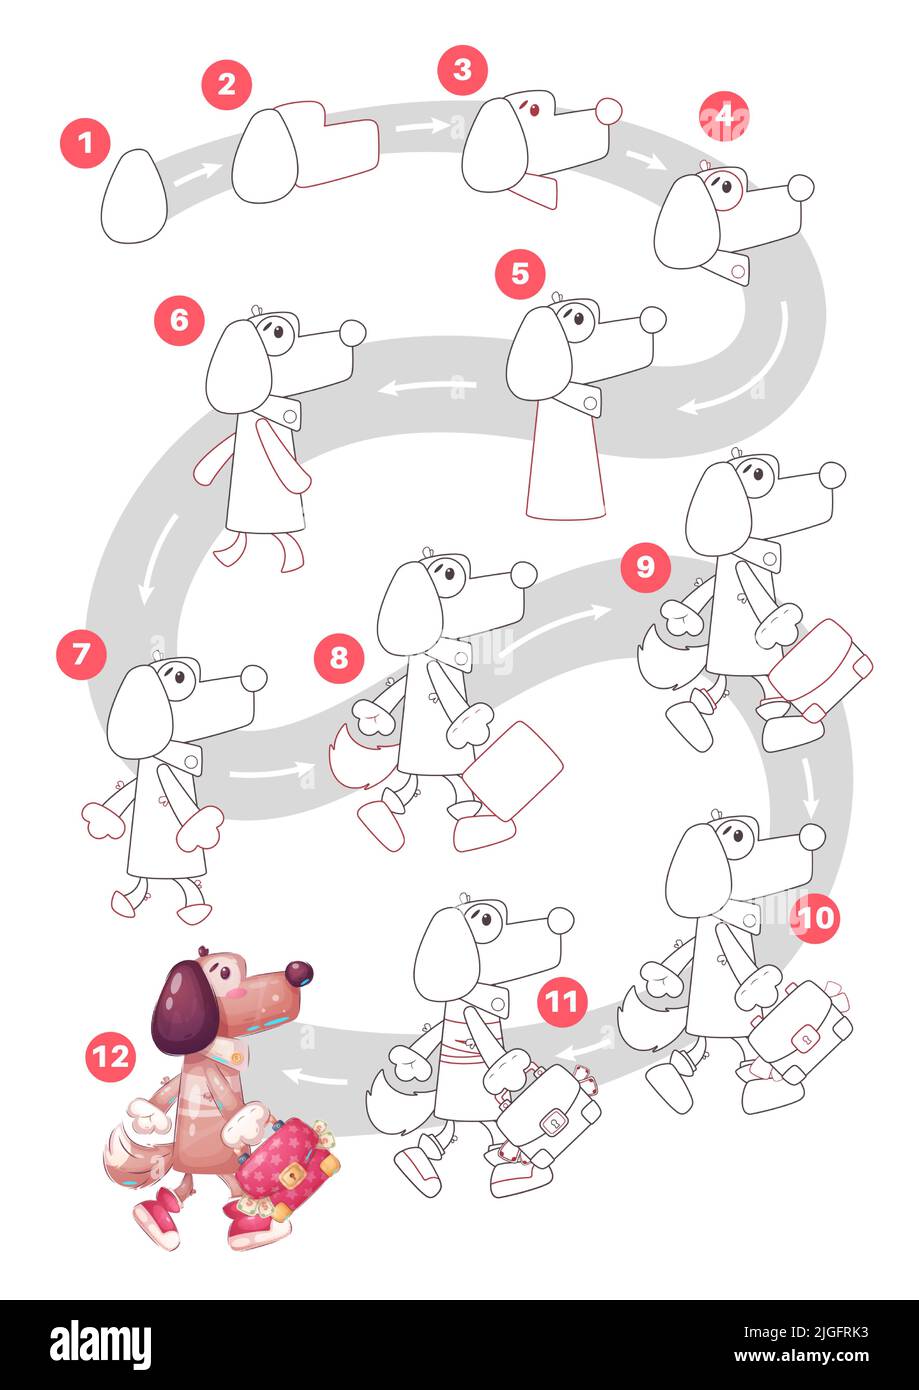 Personnage de dessin animé animal banquier chien - tutoriel de dessin Illustration de Vecteur